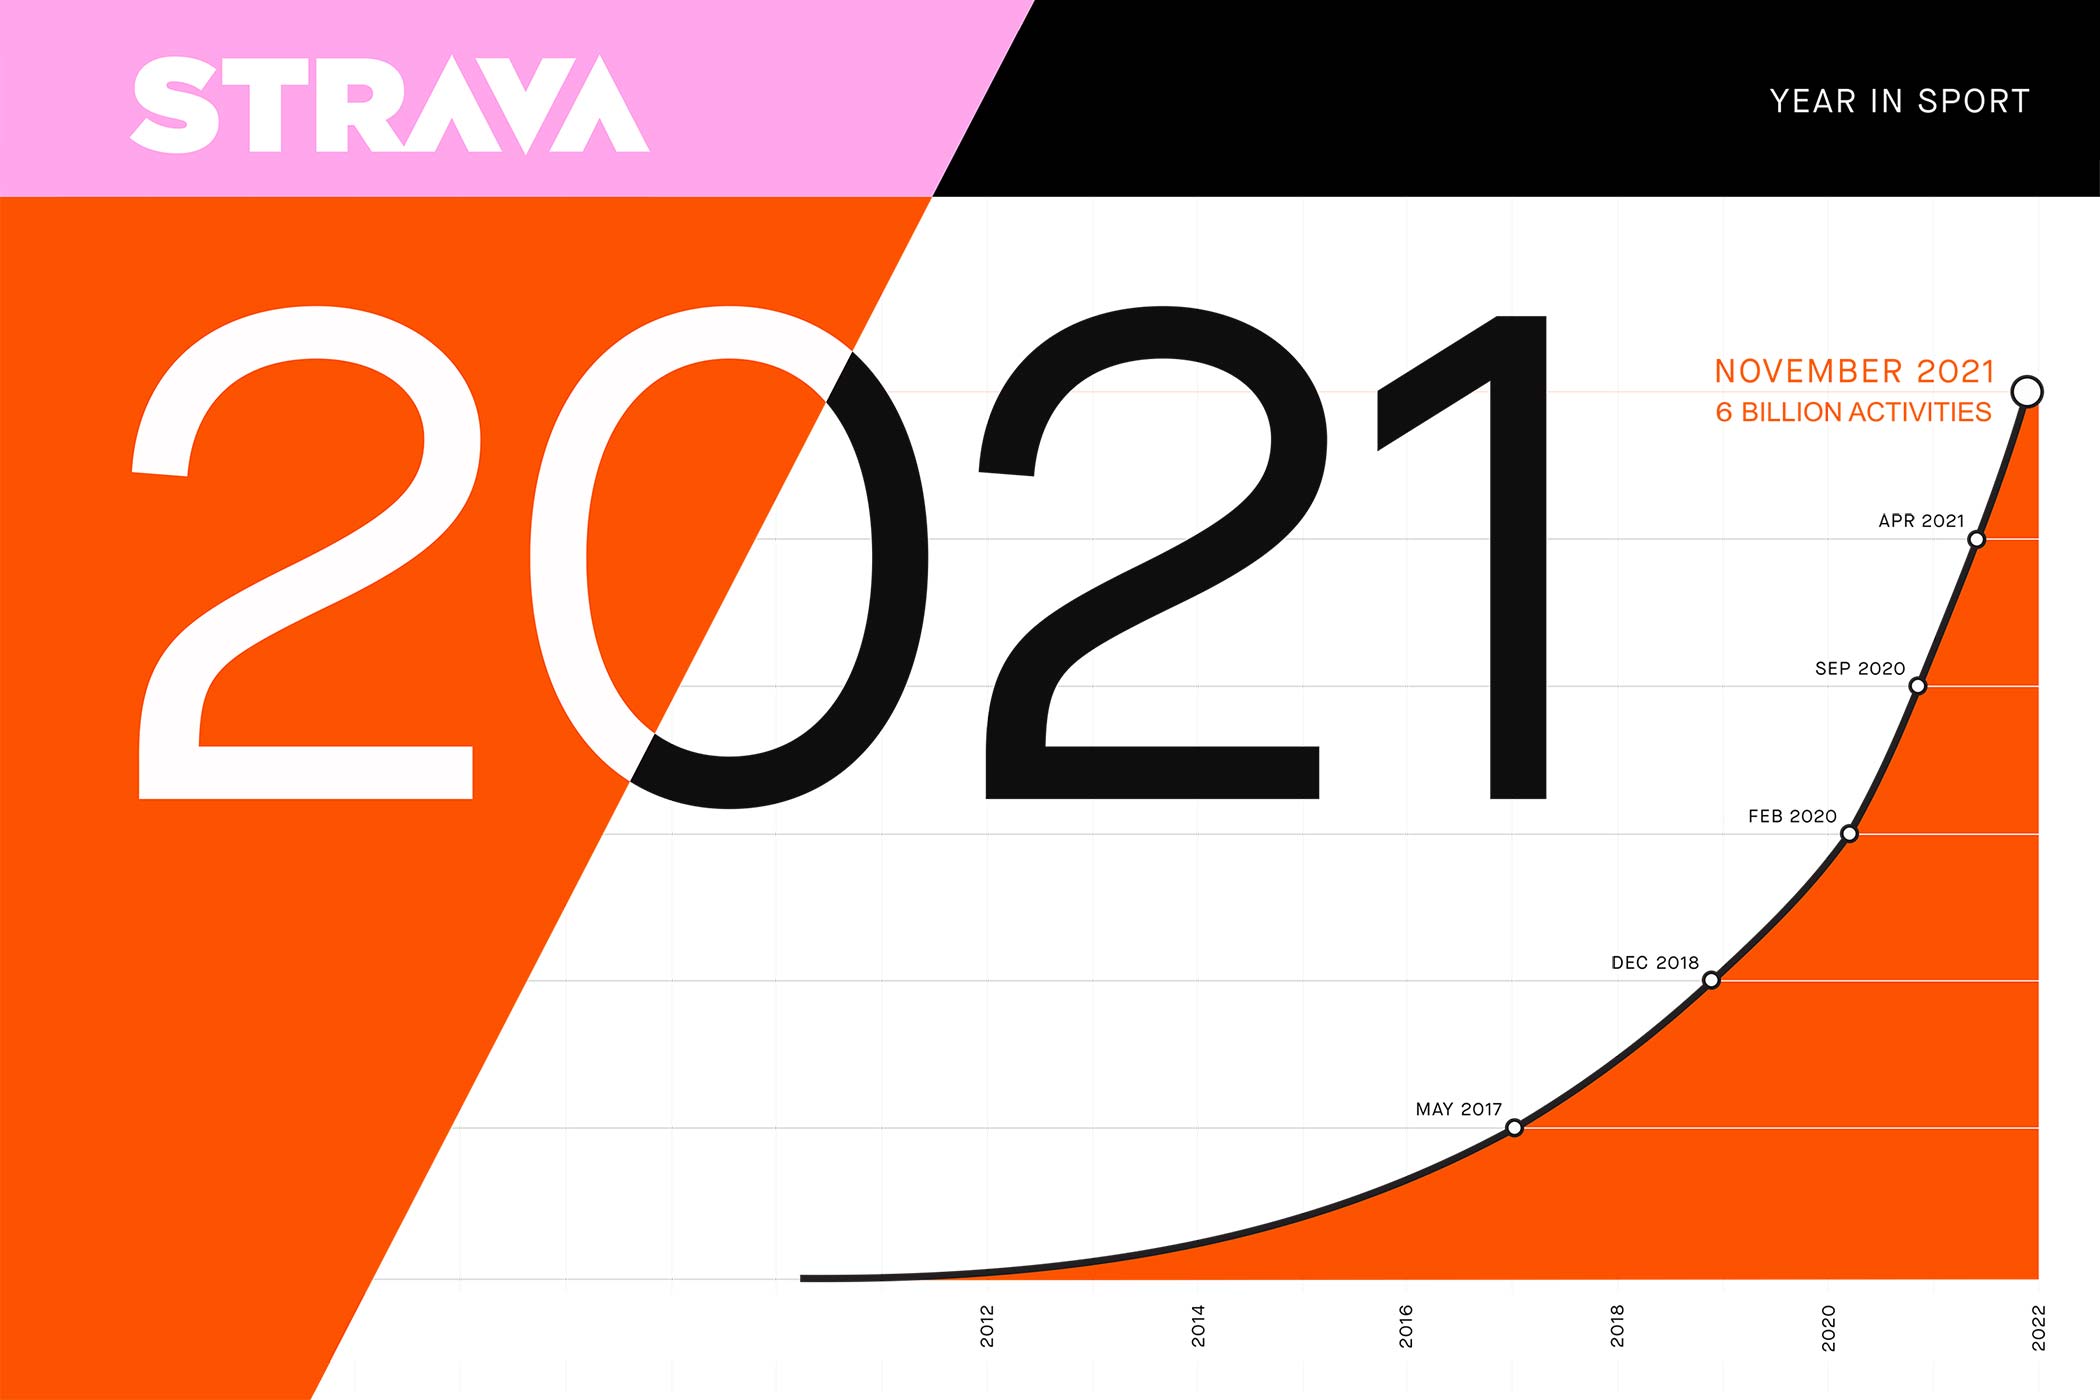 Strava 2021 Year in Sport shows 63 growth in activities! Bikerumor